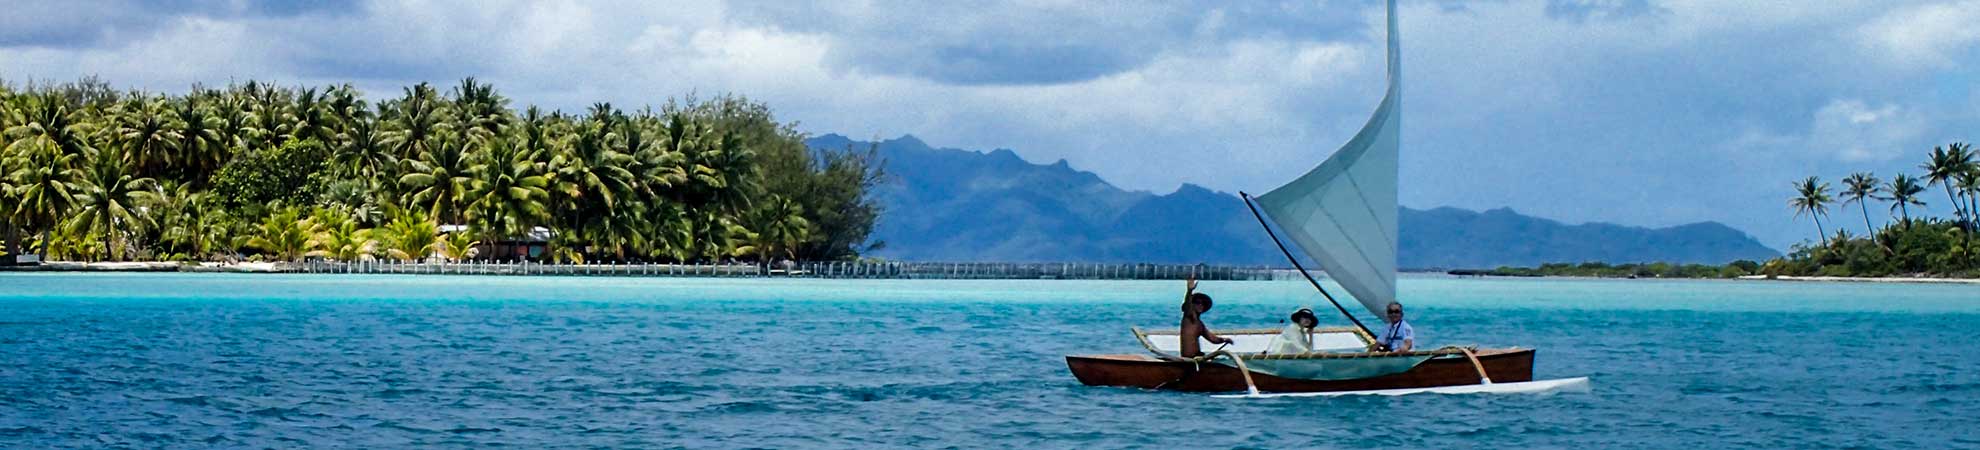 Bora Bora voyage prix